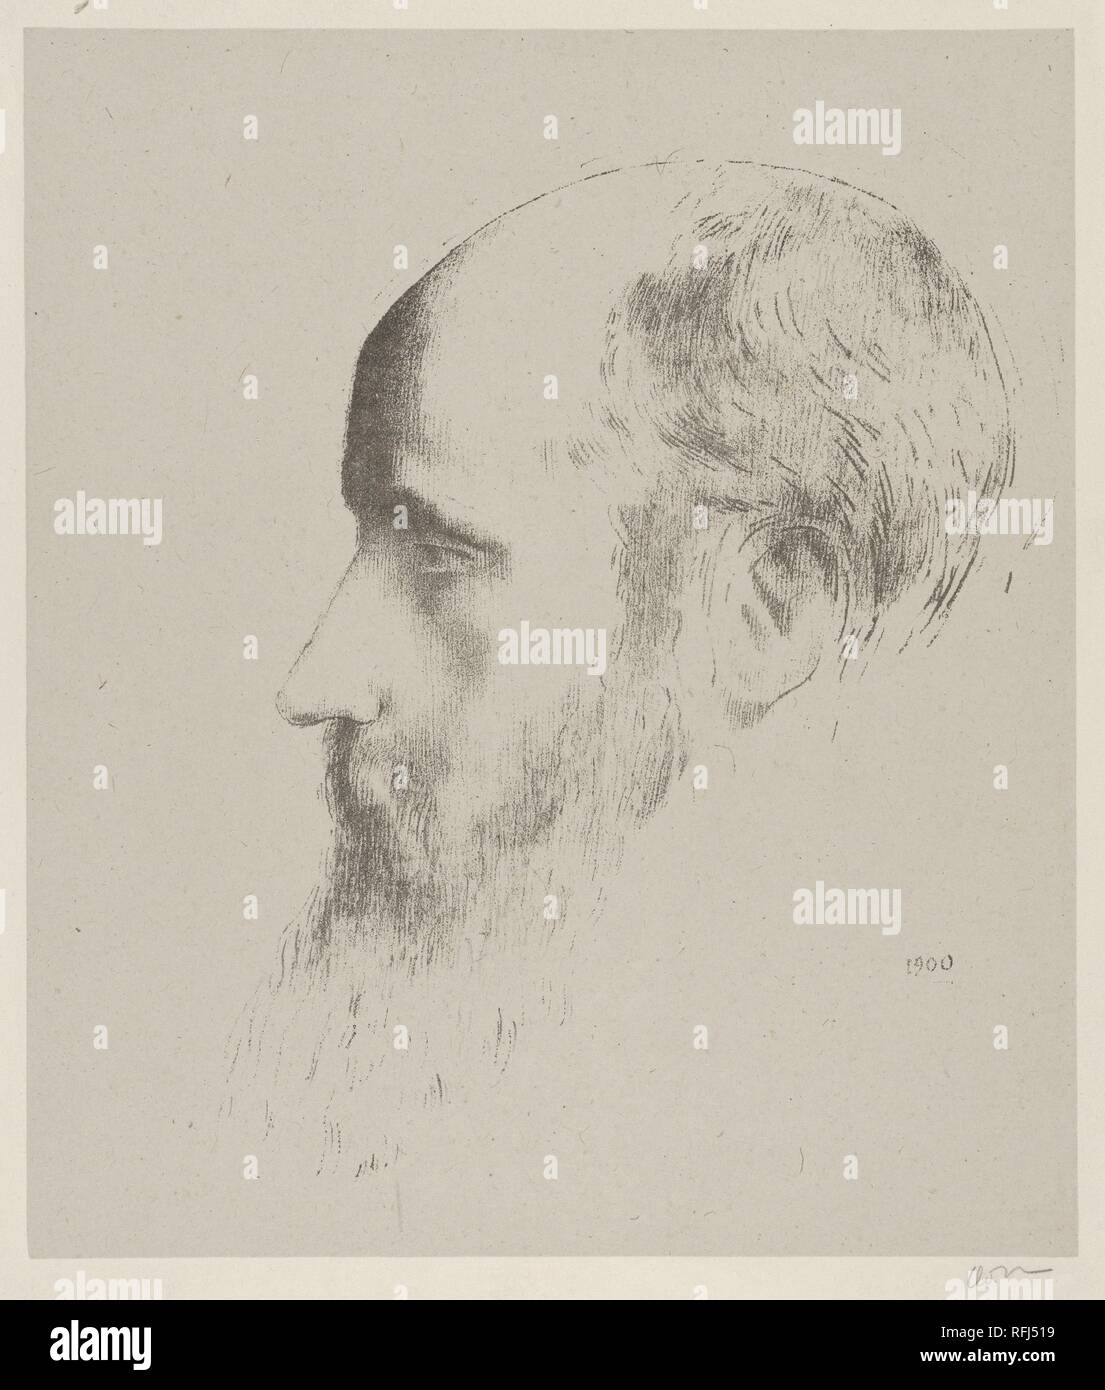 Portrait von Edouard Vuillard. Künstler: Odilon Redon (Französisch, Bordeaux, Paris 1840-1916). Maße: Blatt: 17 5/16 x 12 11/16 in. (44 x 32,3 cm) Bild: 9 3/16 x 7 7/8 in. (23,3 x 20 cm). Sitter: Portrait von Édouard Vuillard (Französisch, Cuiseaux 1868-1940 La Baule). Datum: 1900. Museum: Metropolitan Museum of Art, New York, USA. Stockfoto